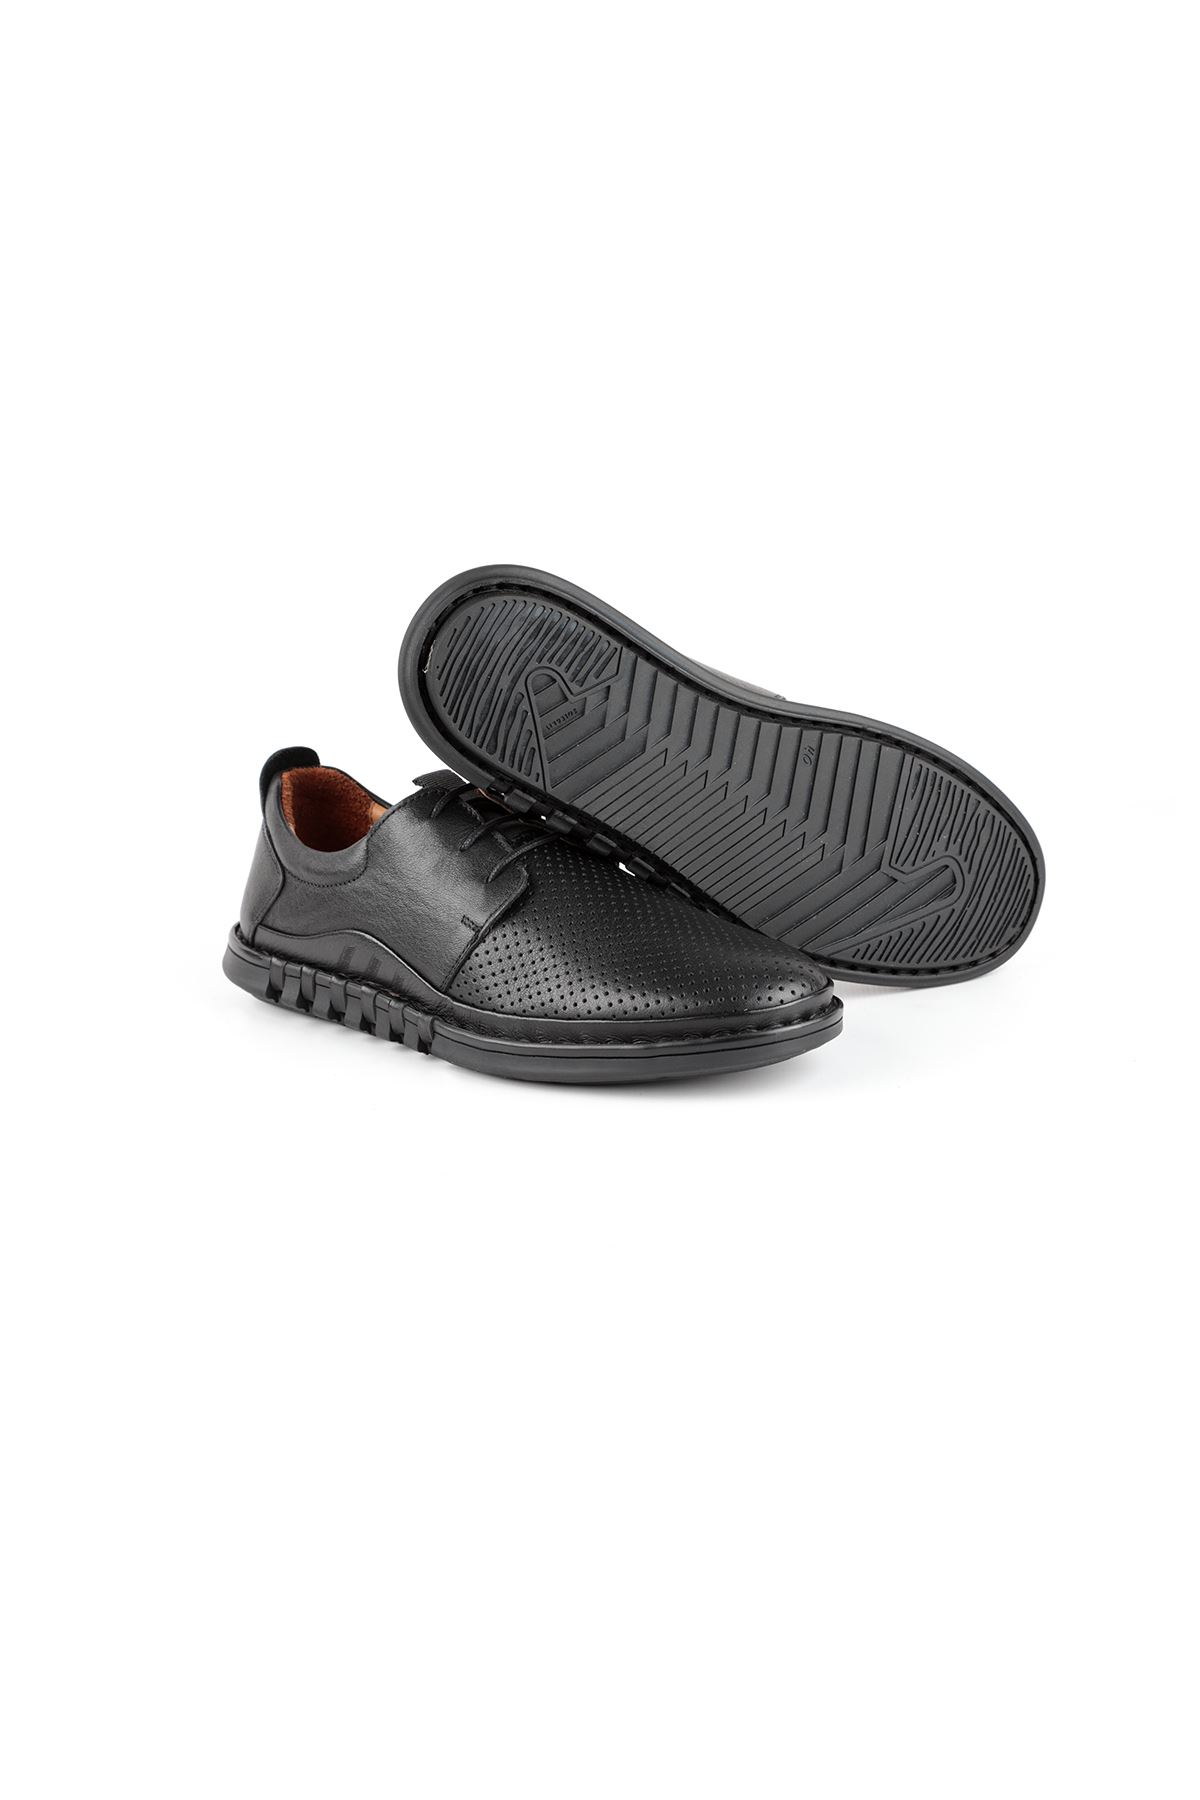 Libero L3759 Black Casual Shoes